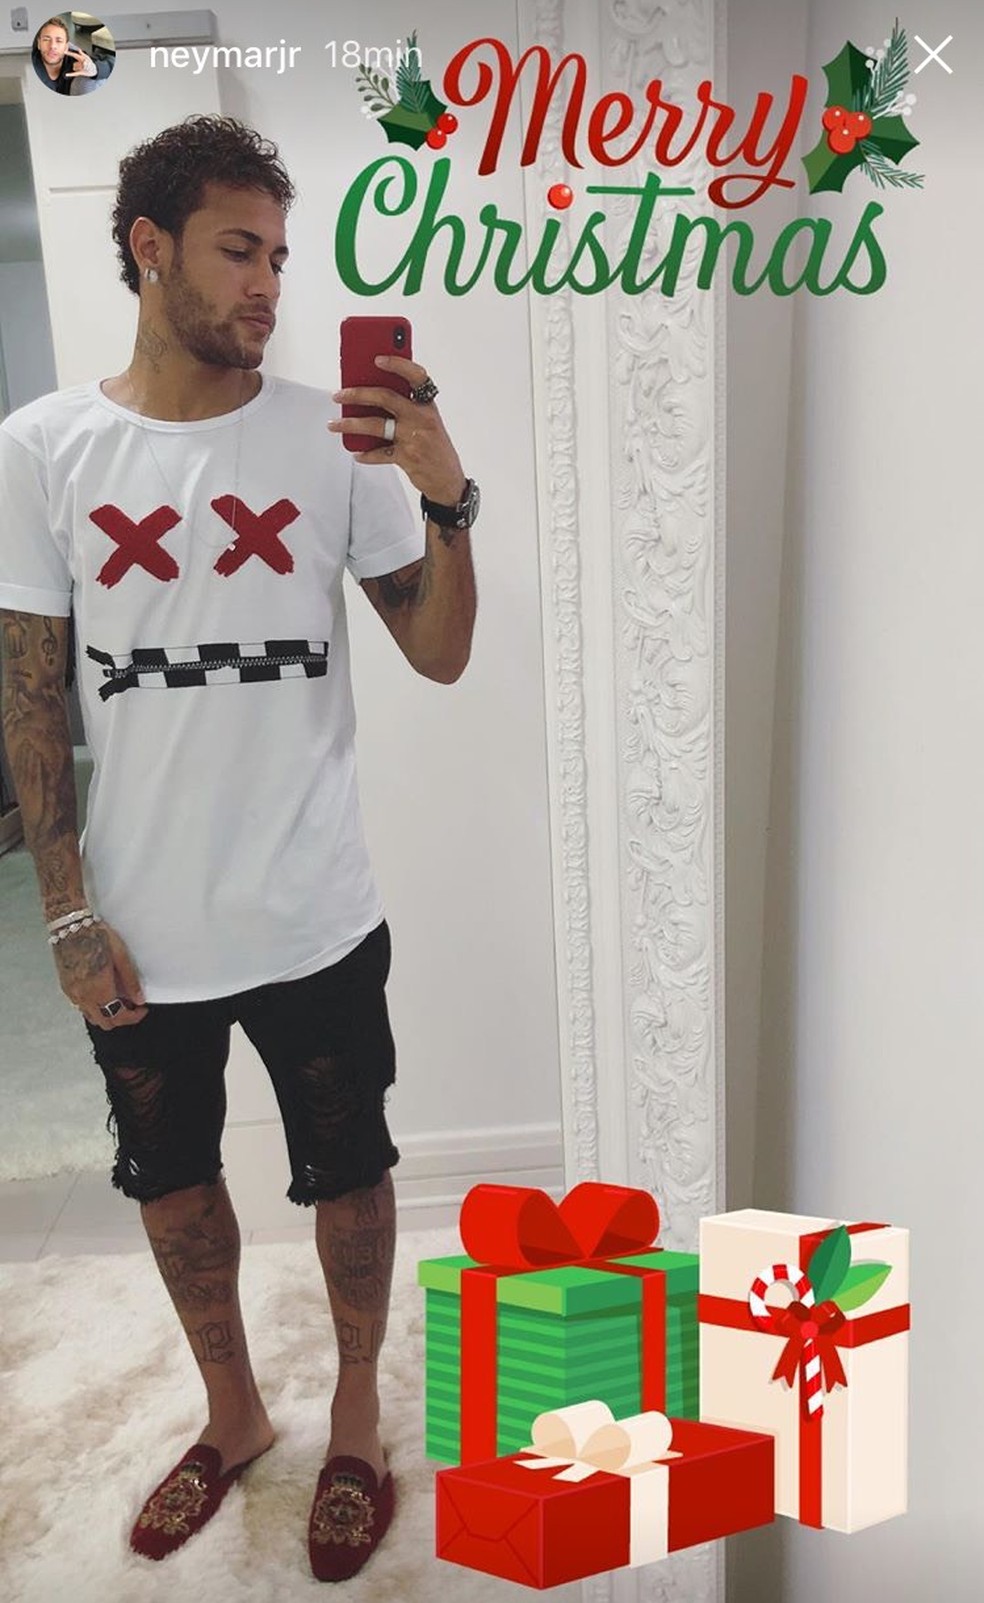 Neymar desejou Feliz Natal aos seguidores (Foto: Reprodução do Instagram)